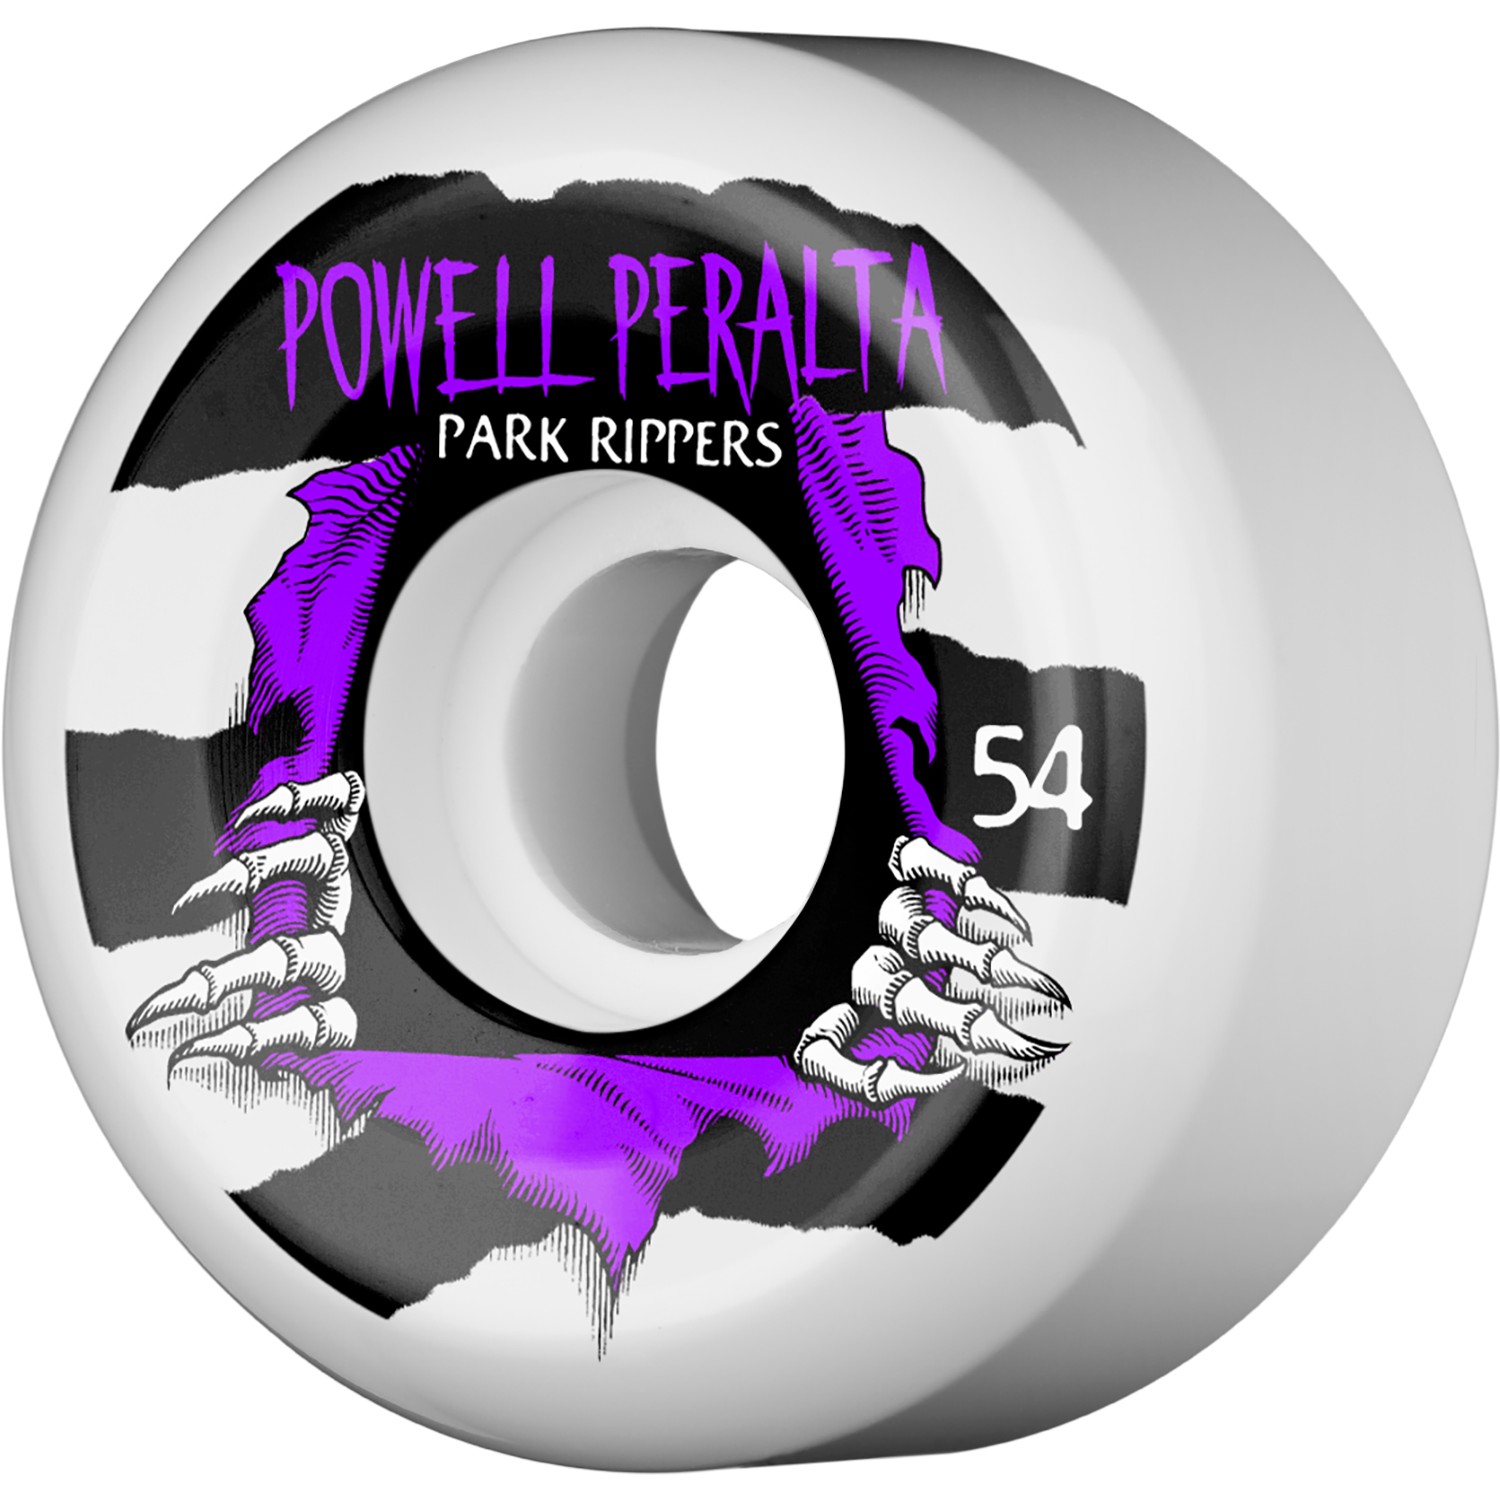 Powell Peralta Park Ripper II 54mm White W/Purple Skateboard Wheels (Set of 4)